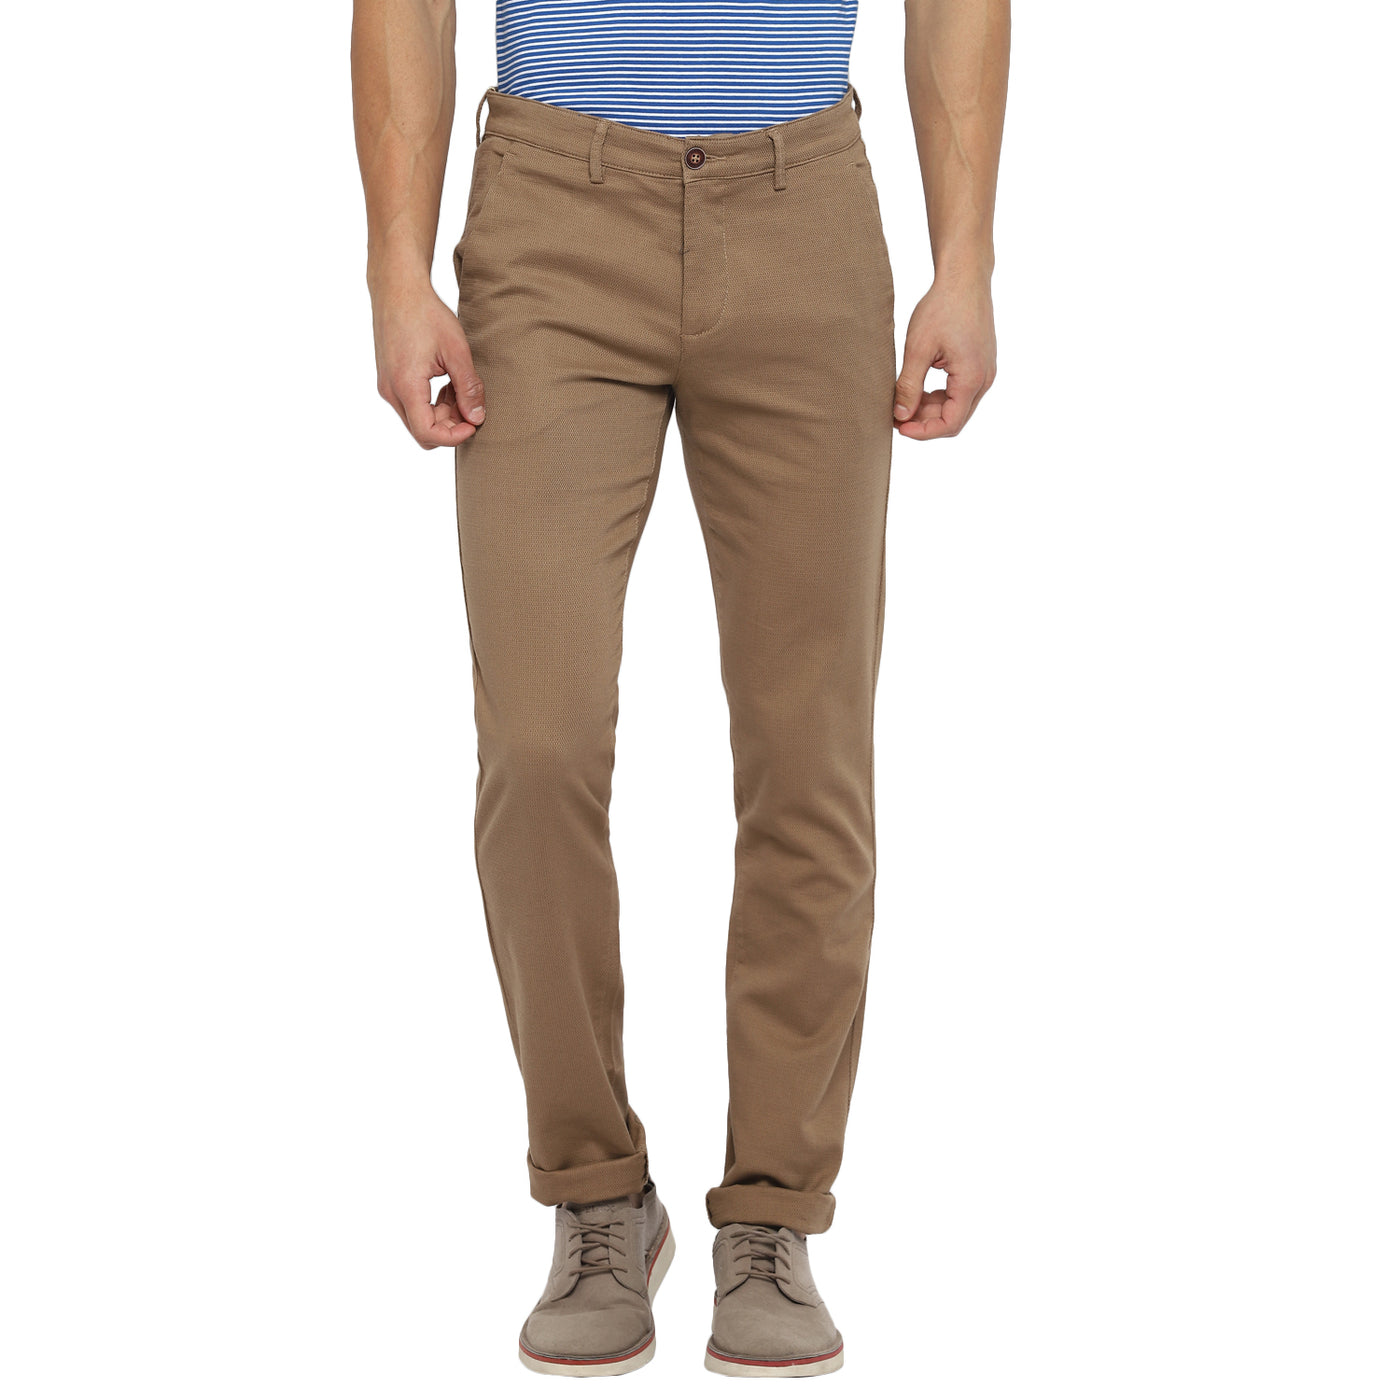 Brown Ultra Slim Fit Self Design Trouser